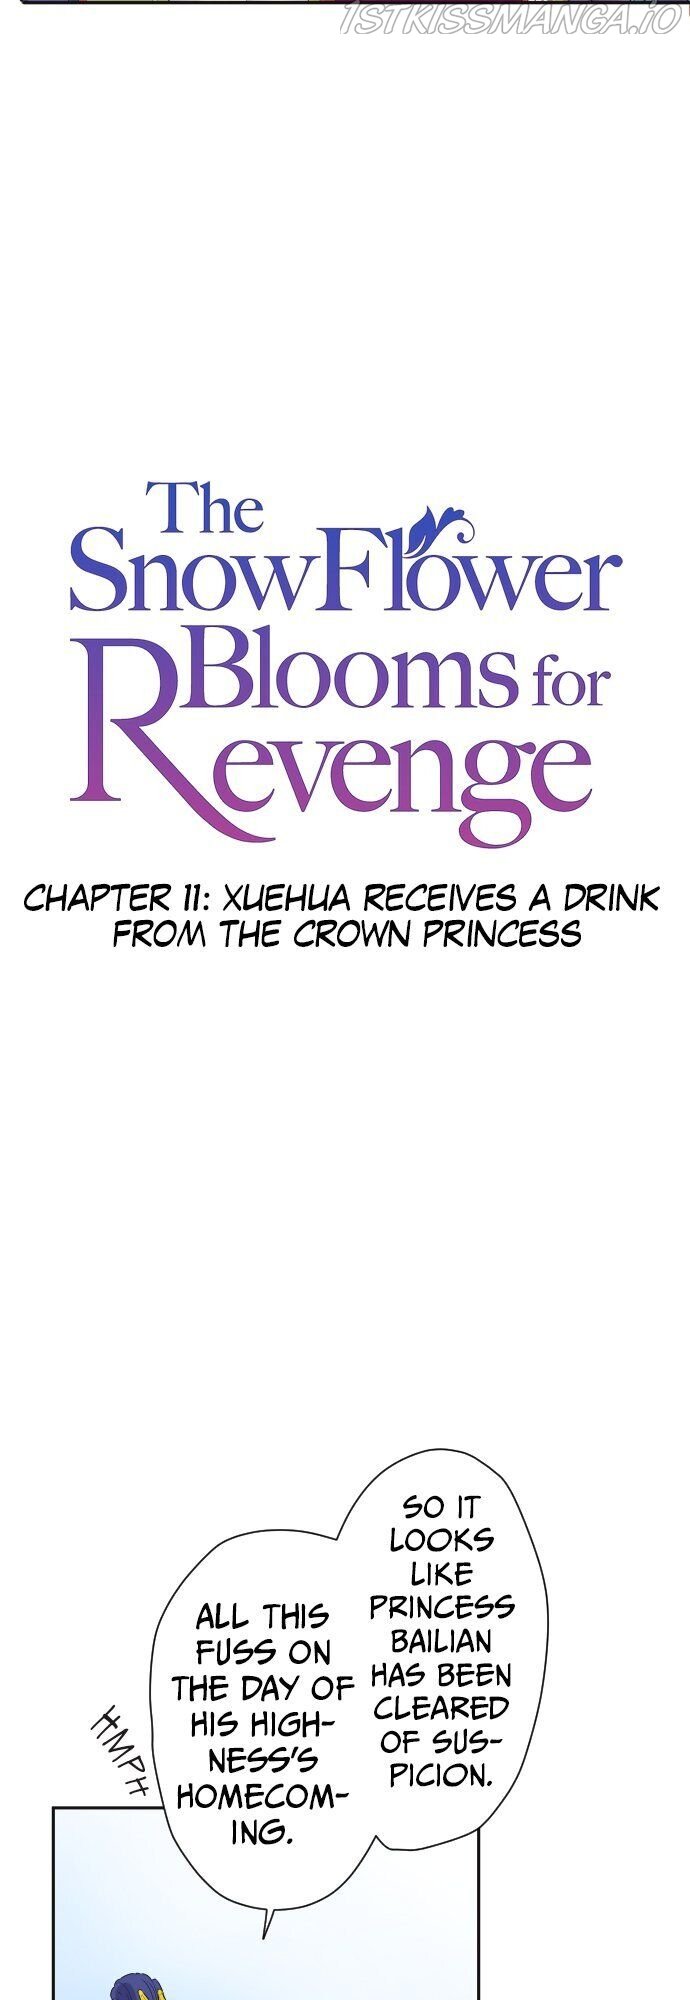 The Snowflower Blooms for Revenge chapter 11